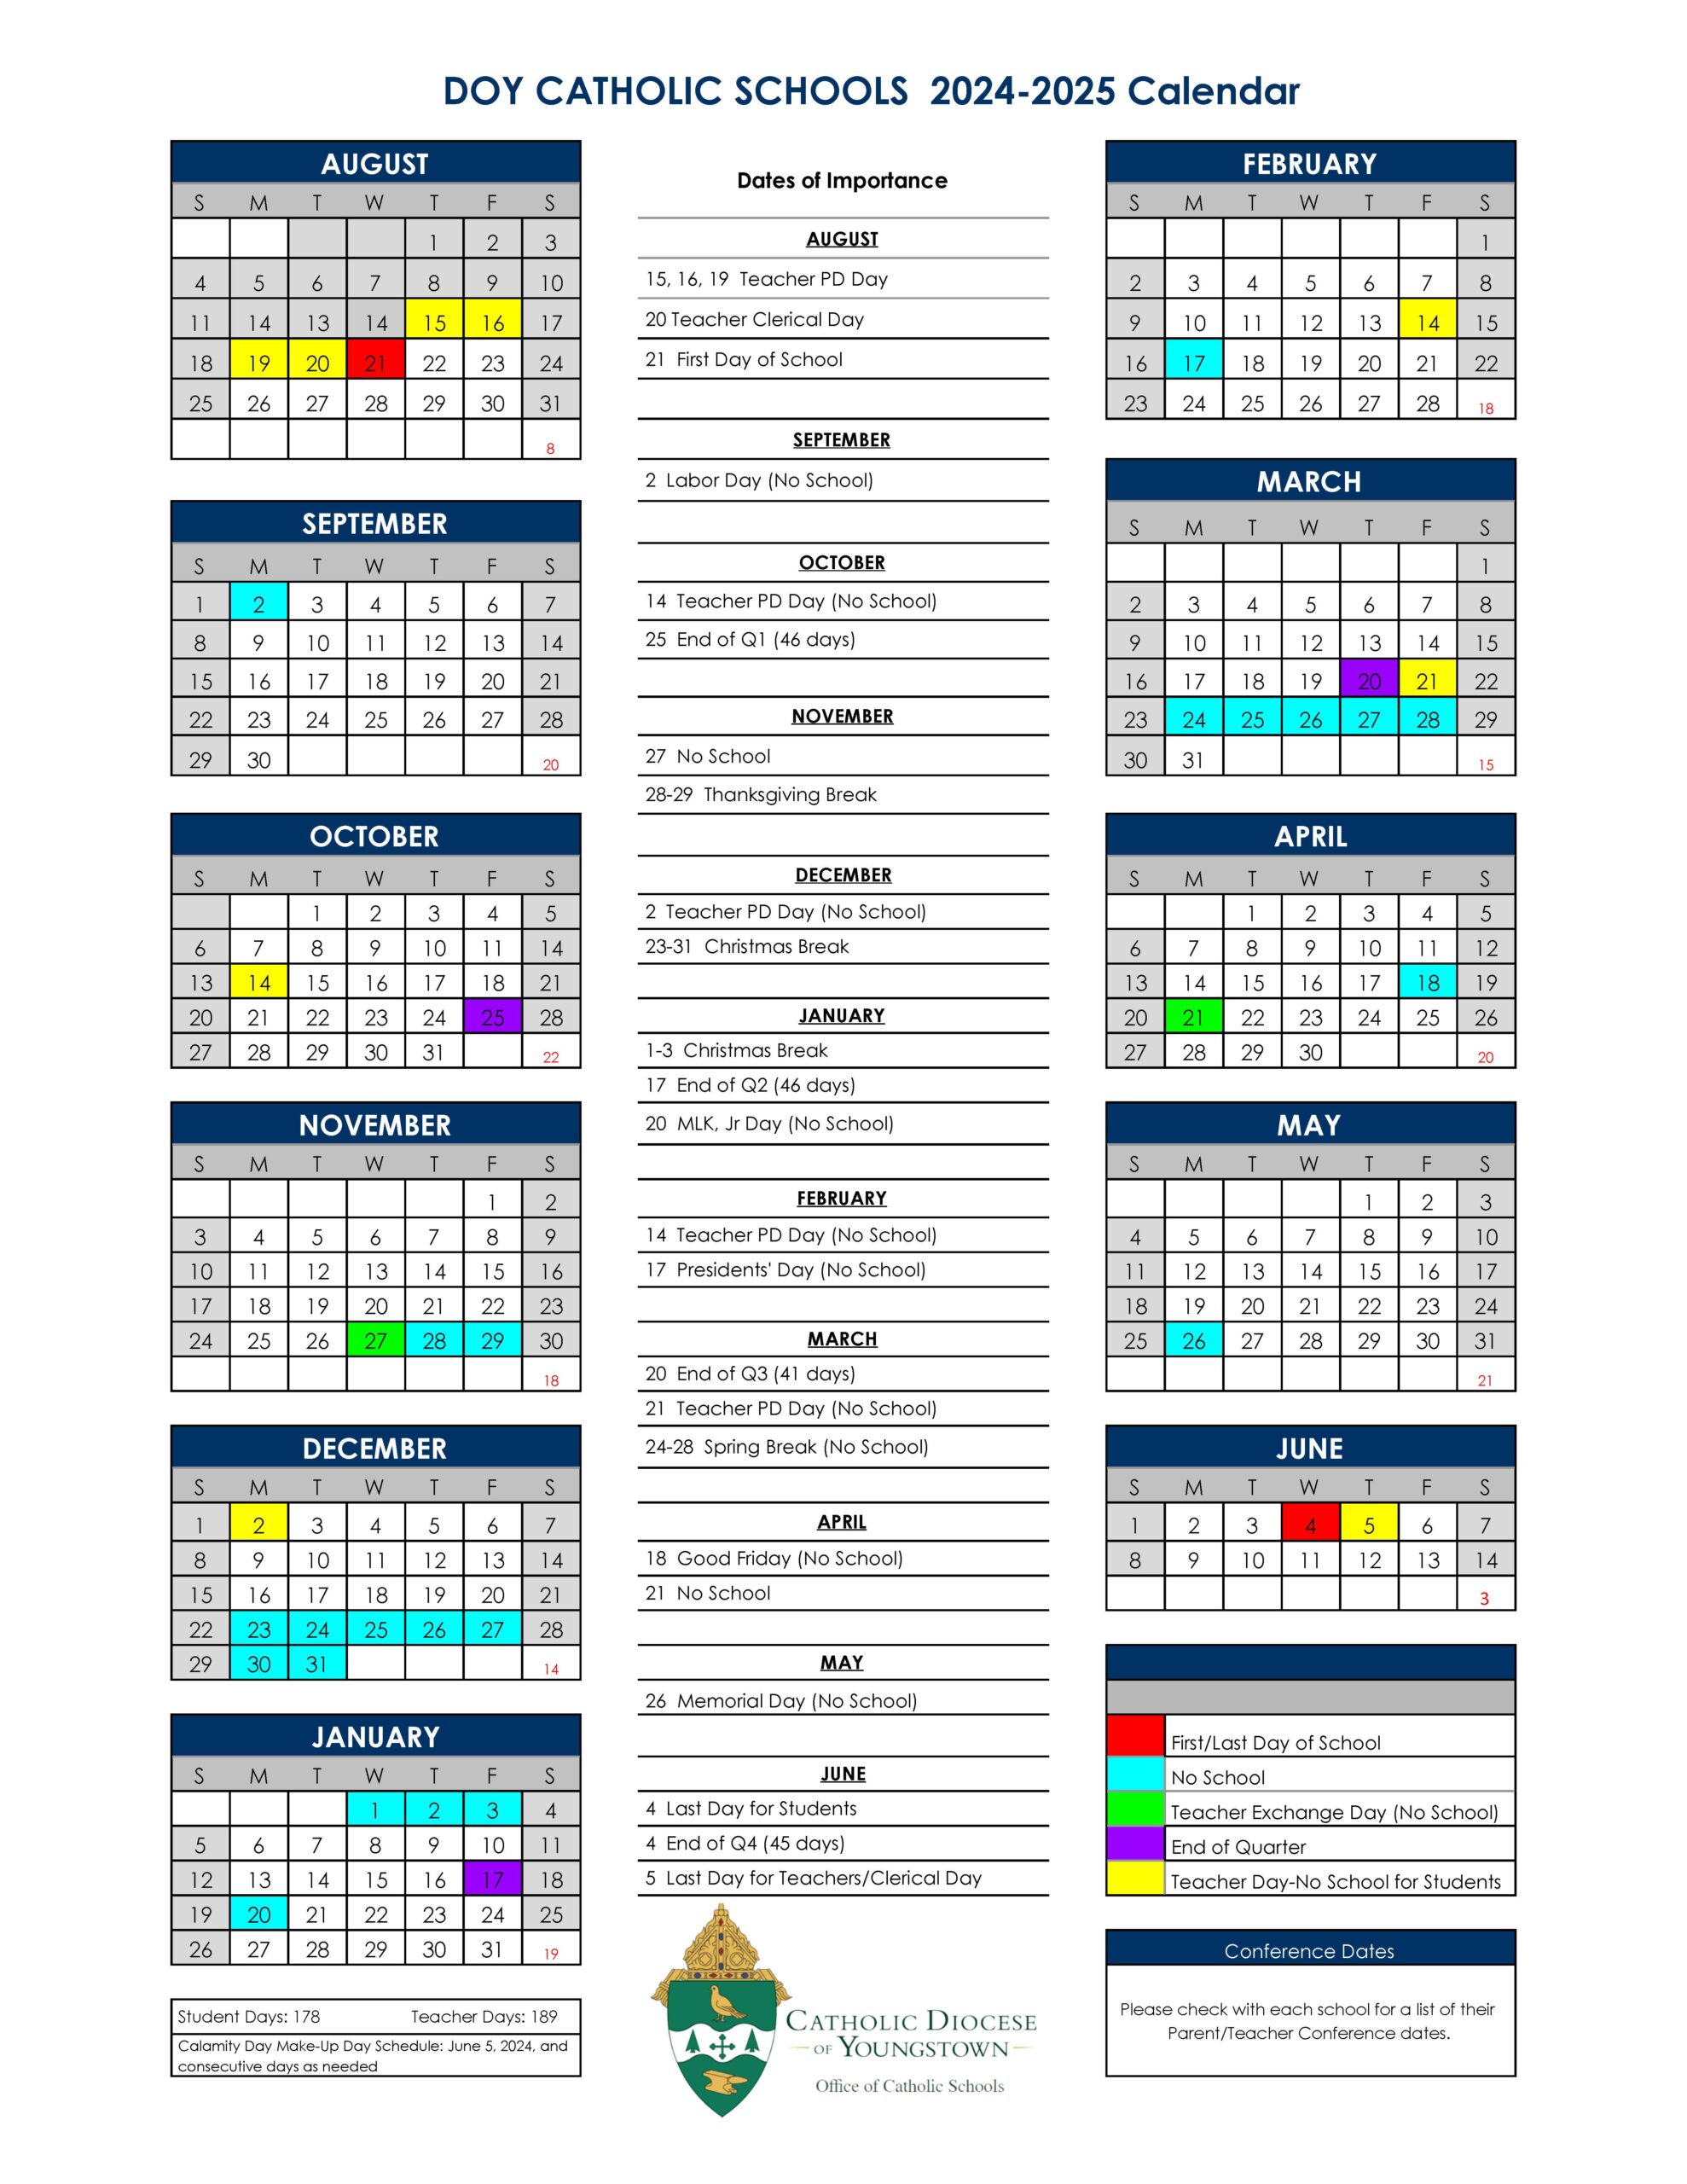 DOY Catholic Schools 2024-2025 Calendar